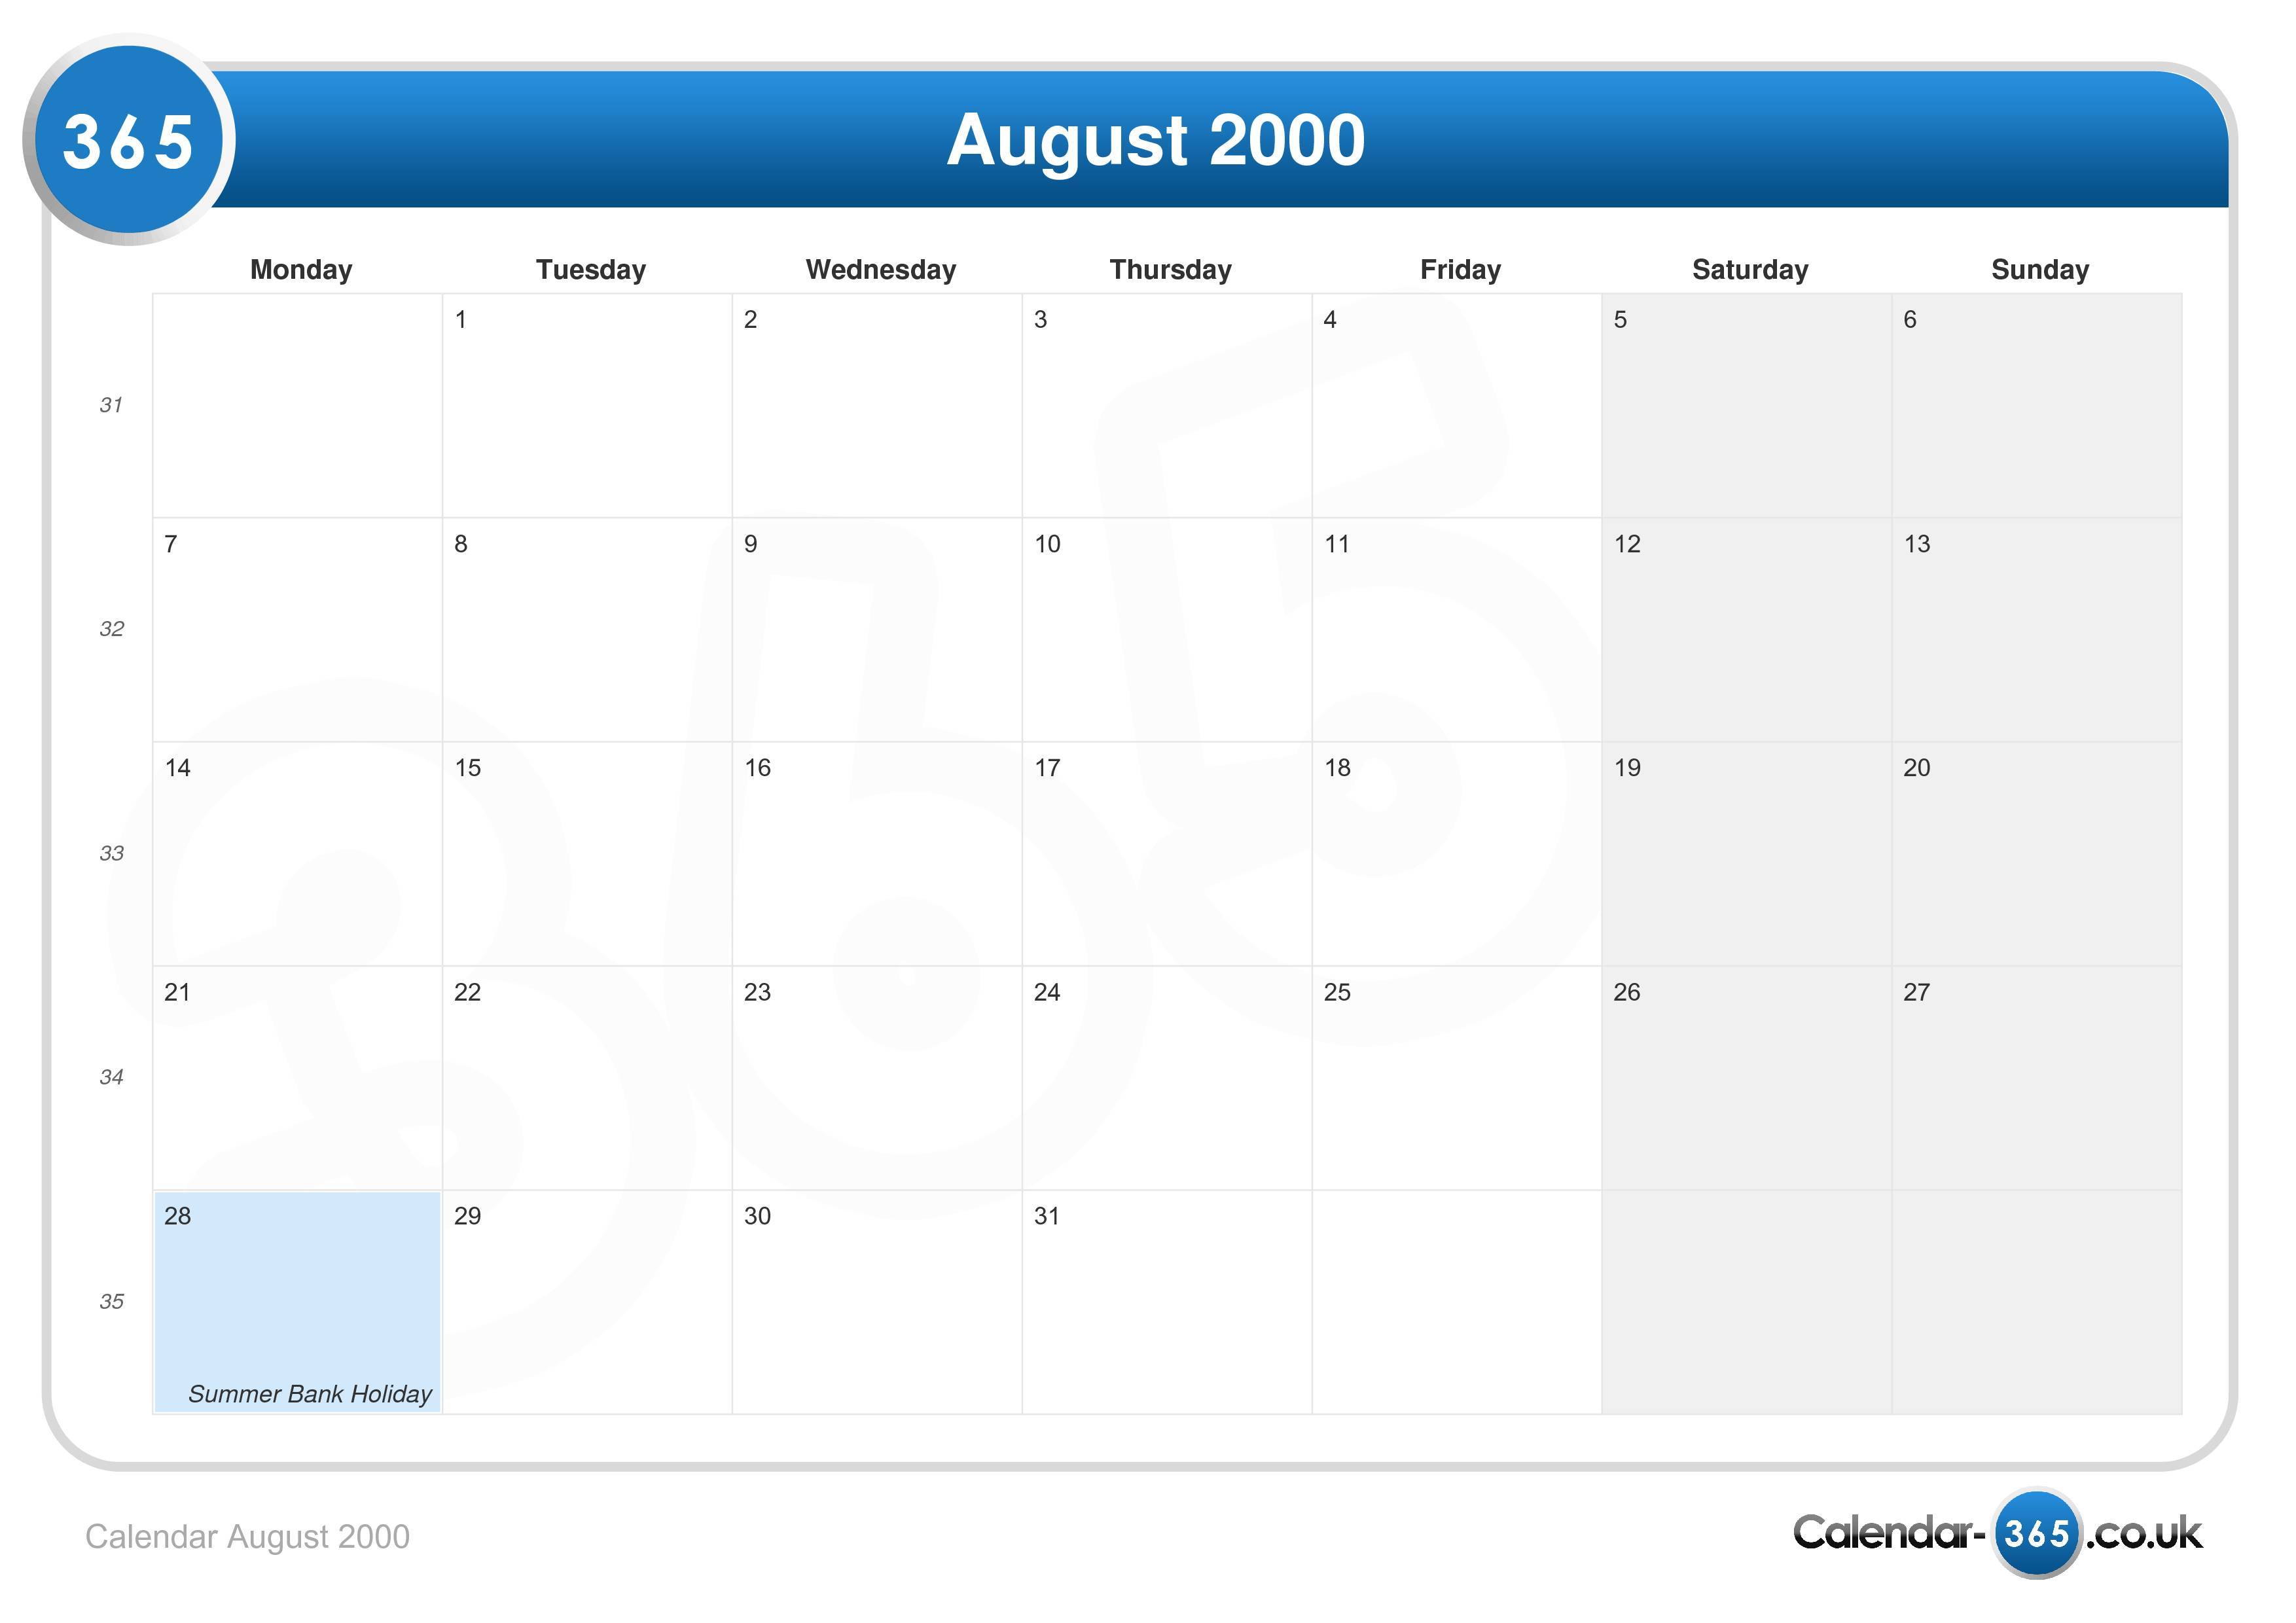 Calendar August 2000